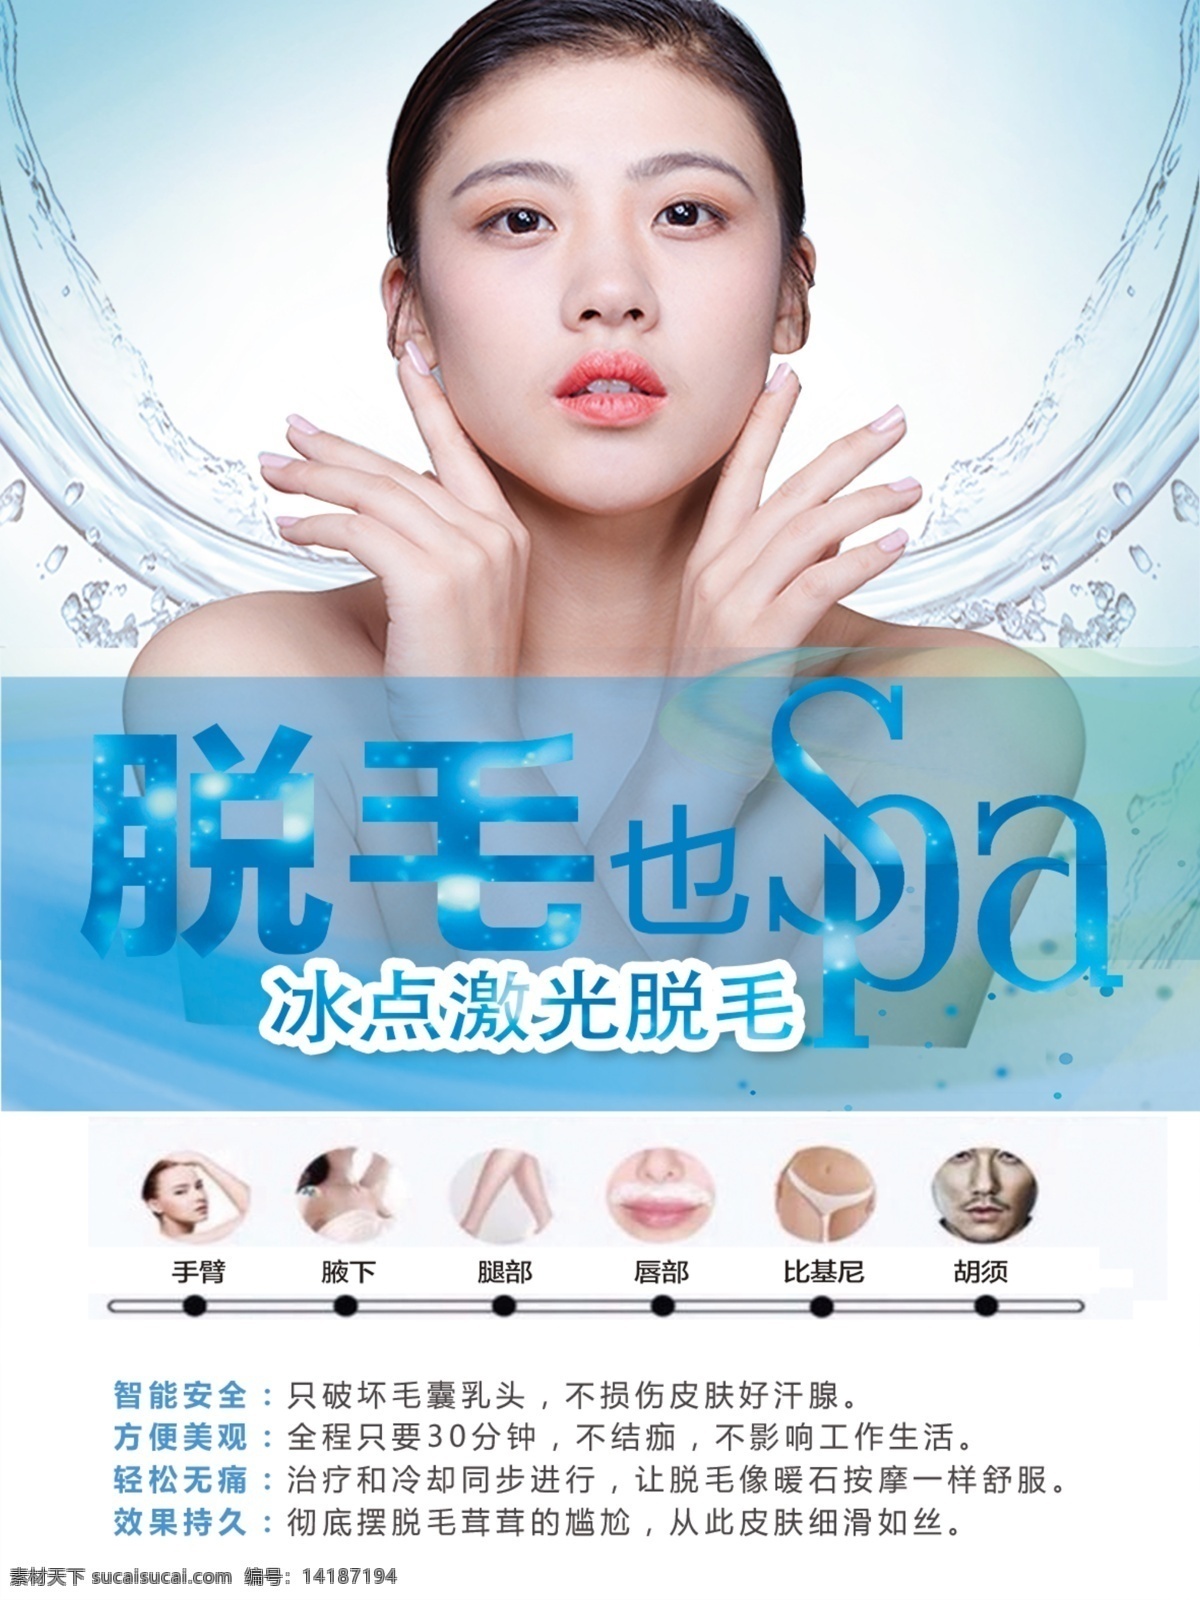 韩国 皮肤 管理 会所 冰点 激光脱毛 冰点美容 人物 整容会所 治疗